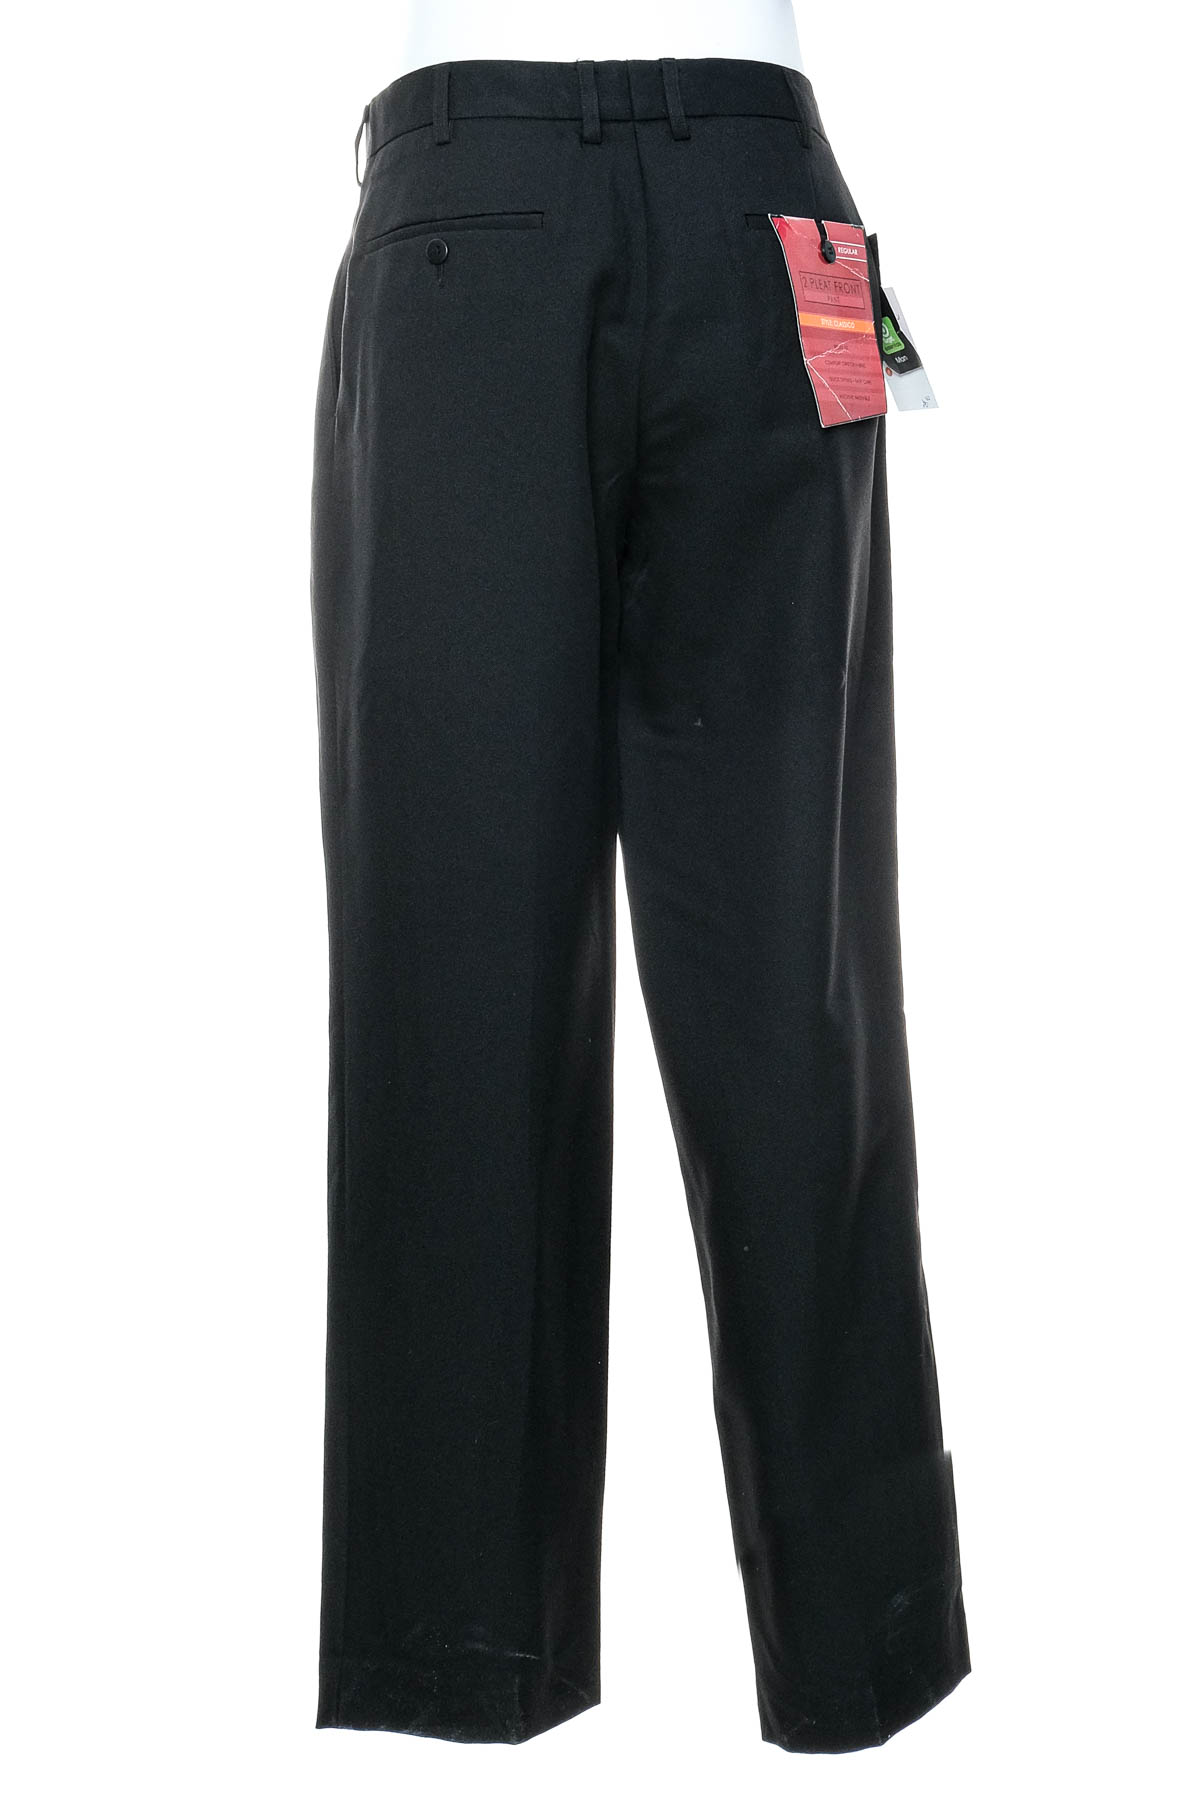 Pantalon pentru bărbați - Target - 1